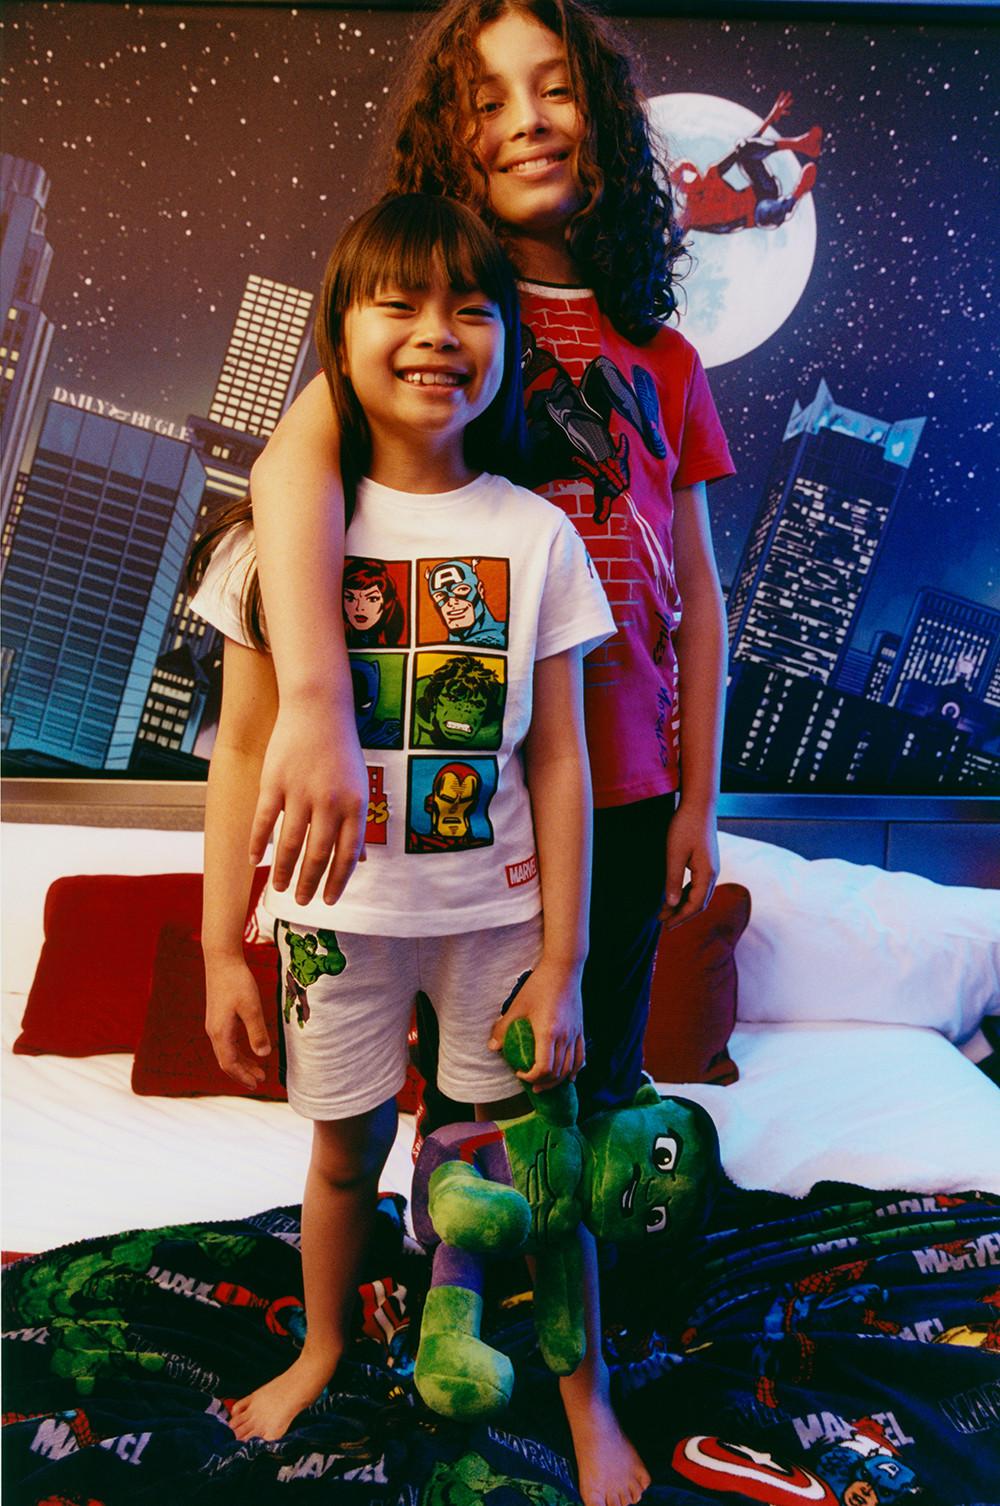 Kids wearing pyjama sets and holding a Hulk plush toy